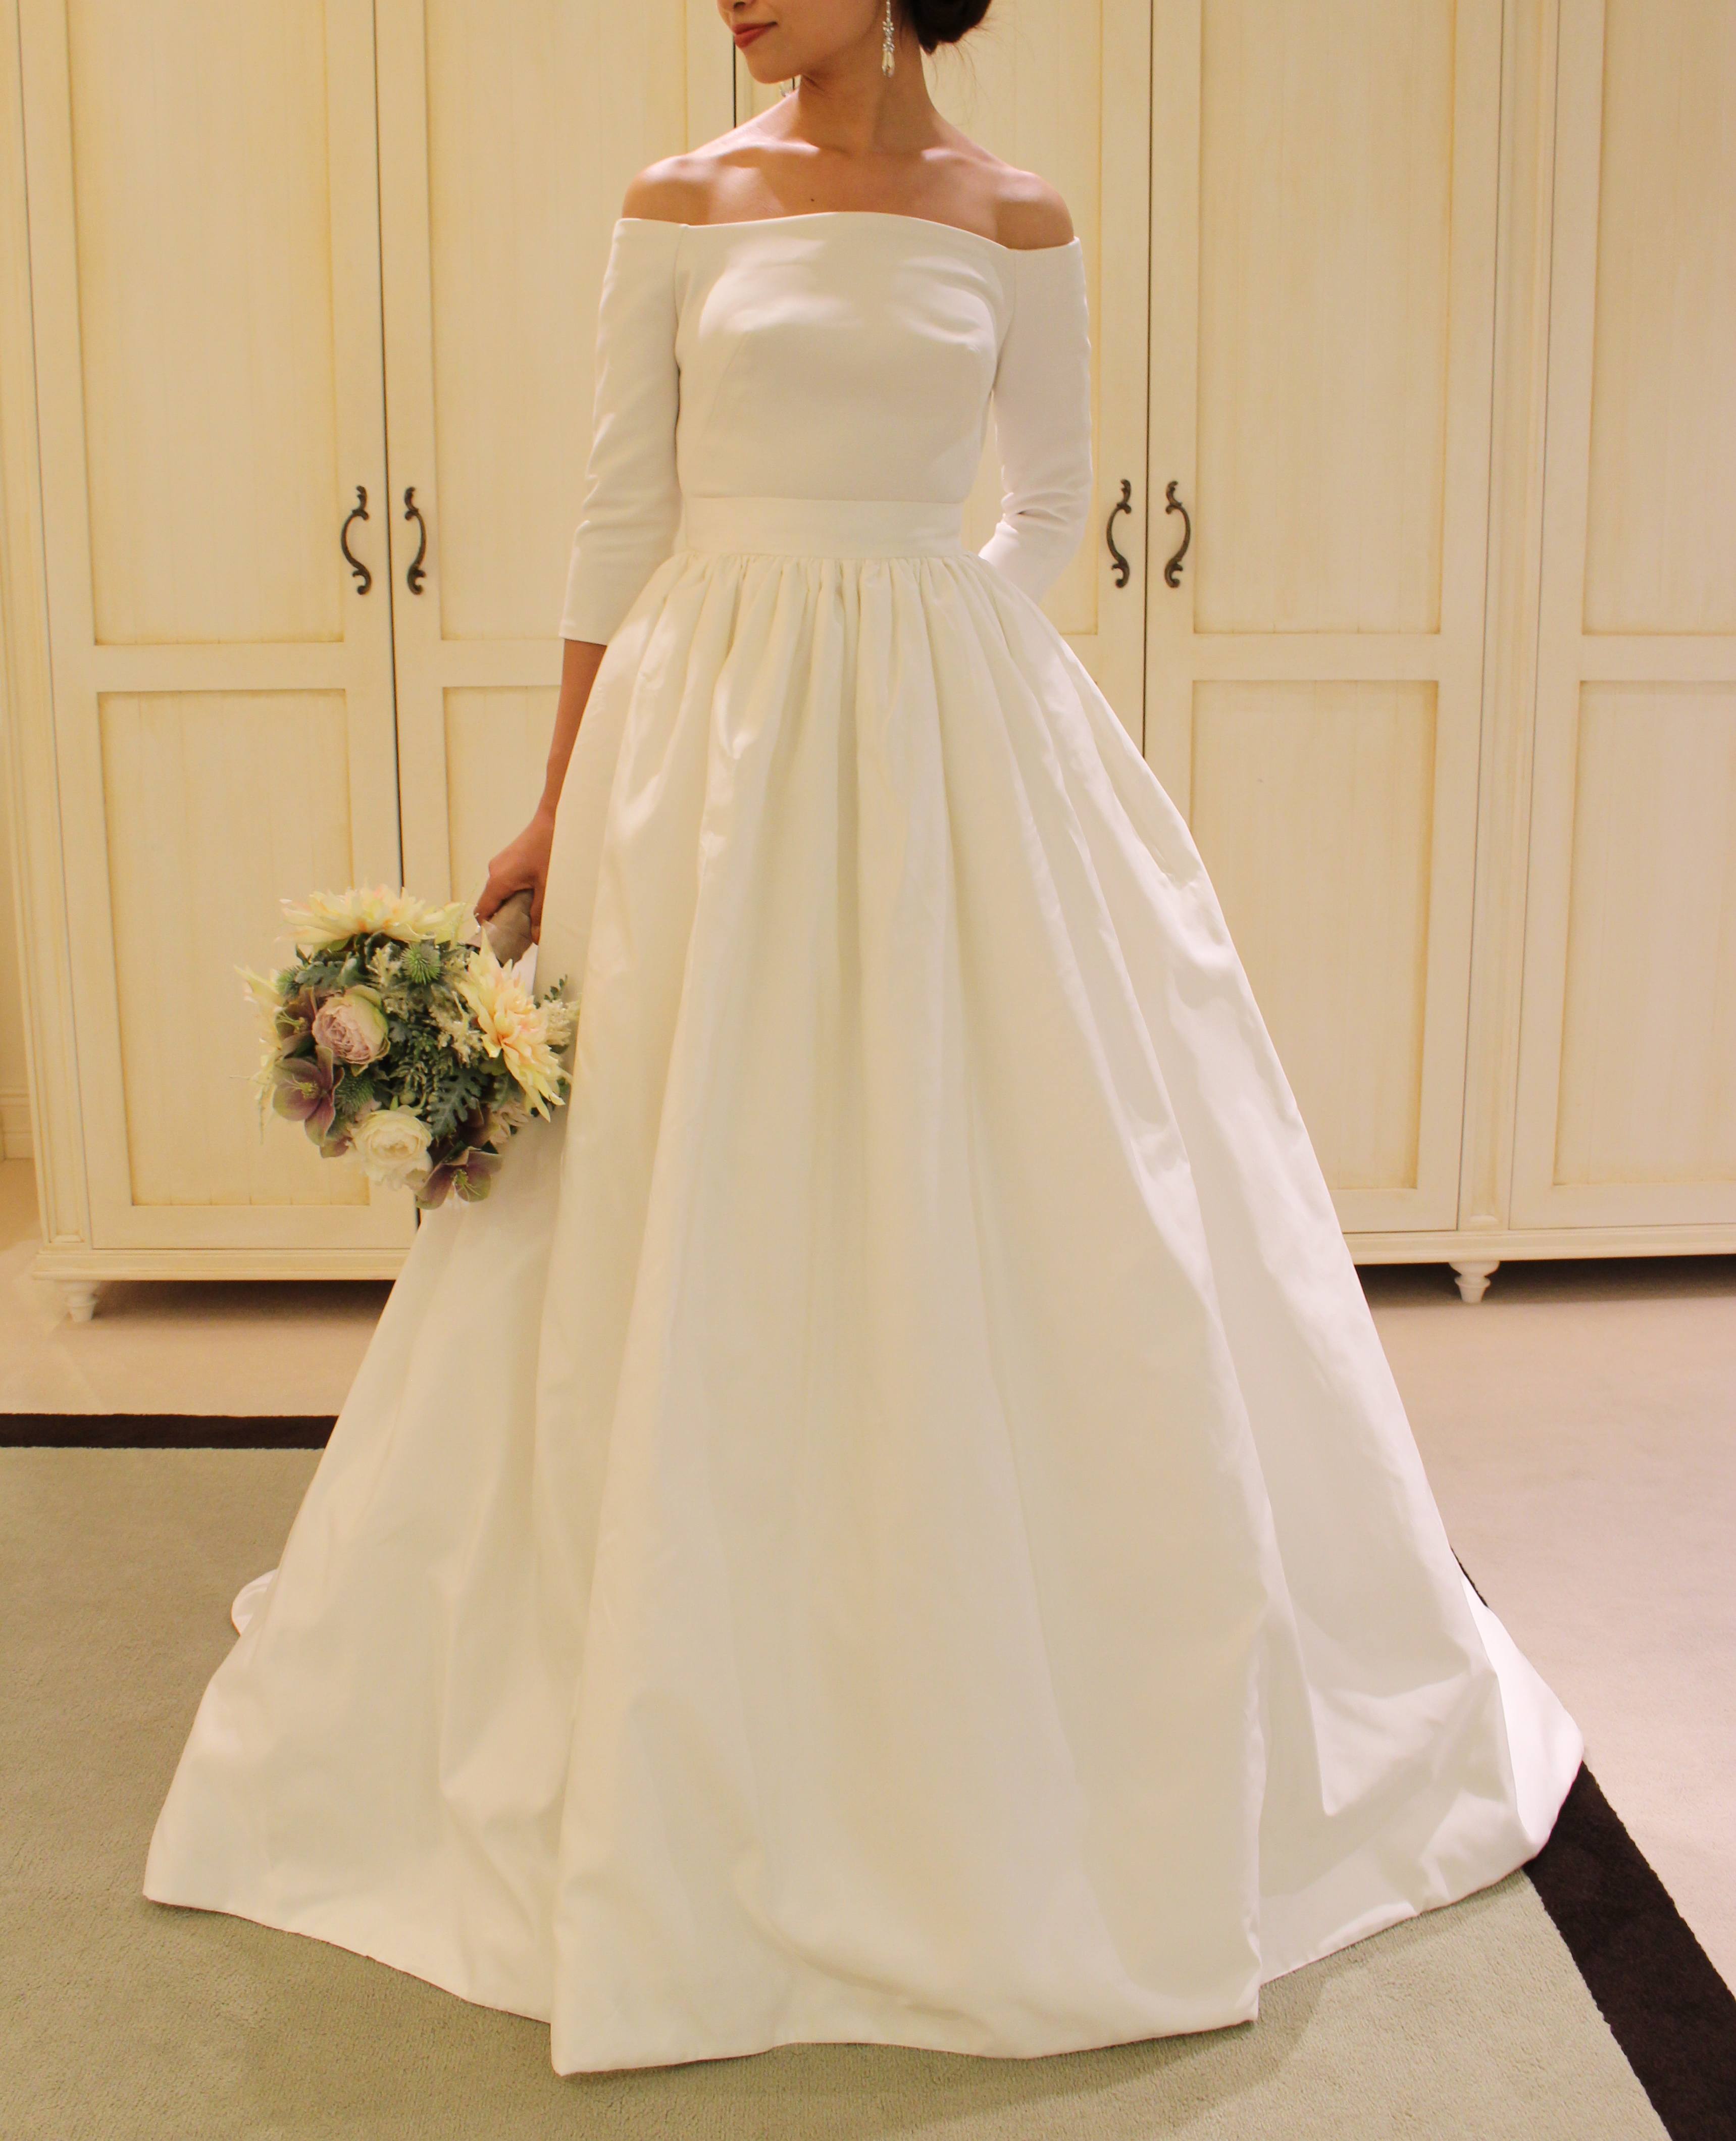 大人気のYolan Crisの新作ドレスでモードな花嫁様に| ブログ | Fiore 